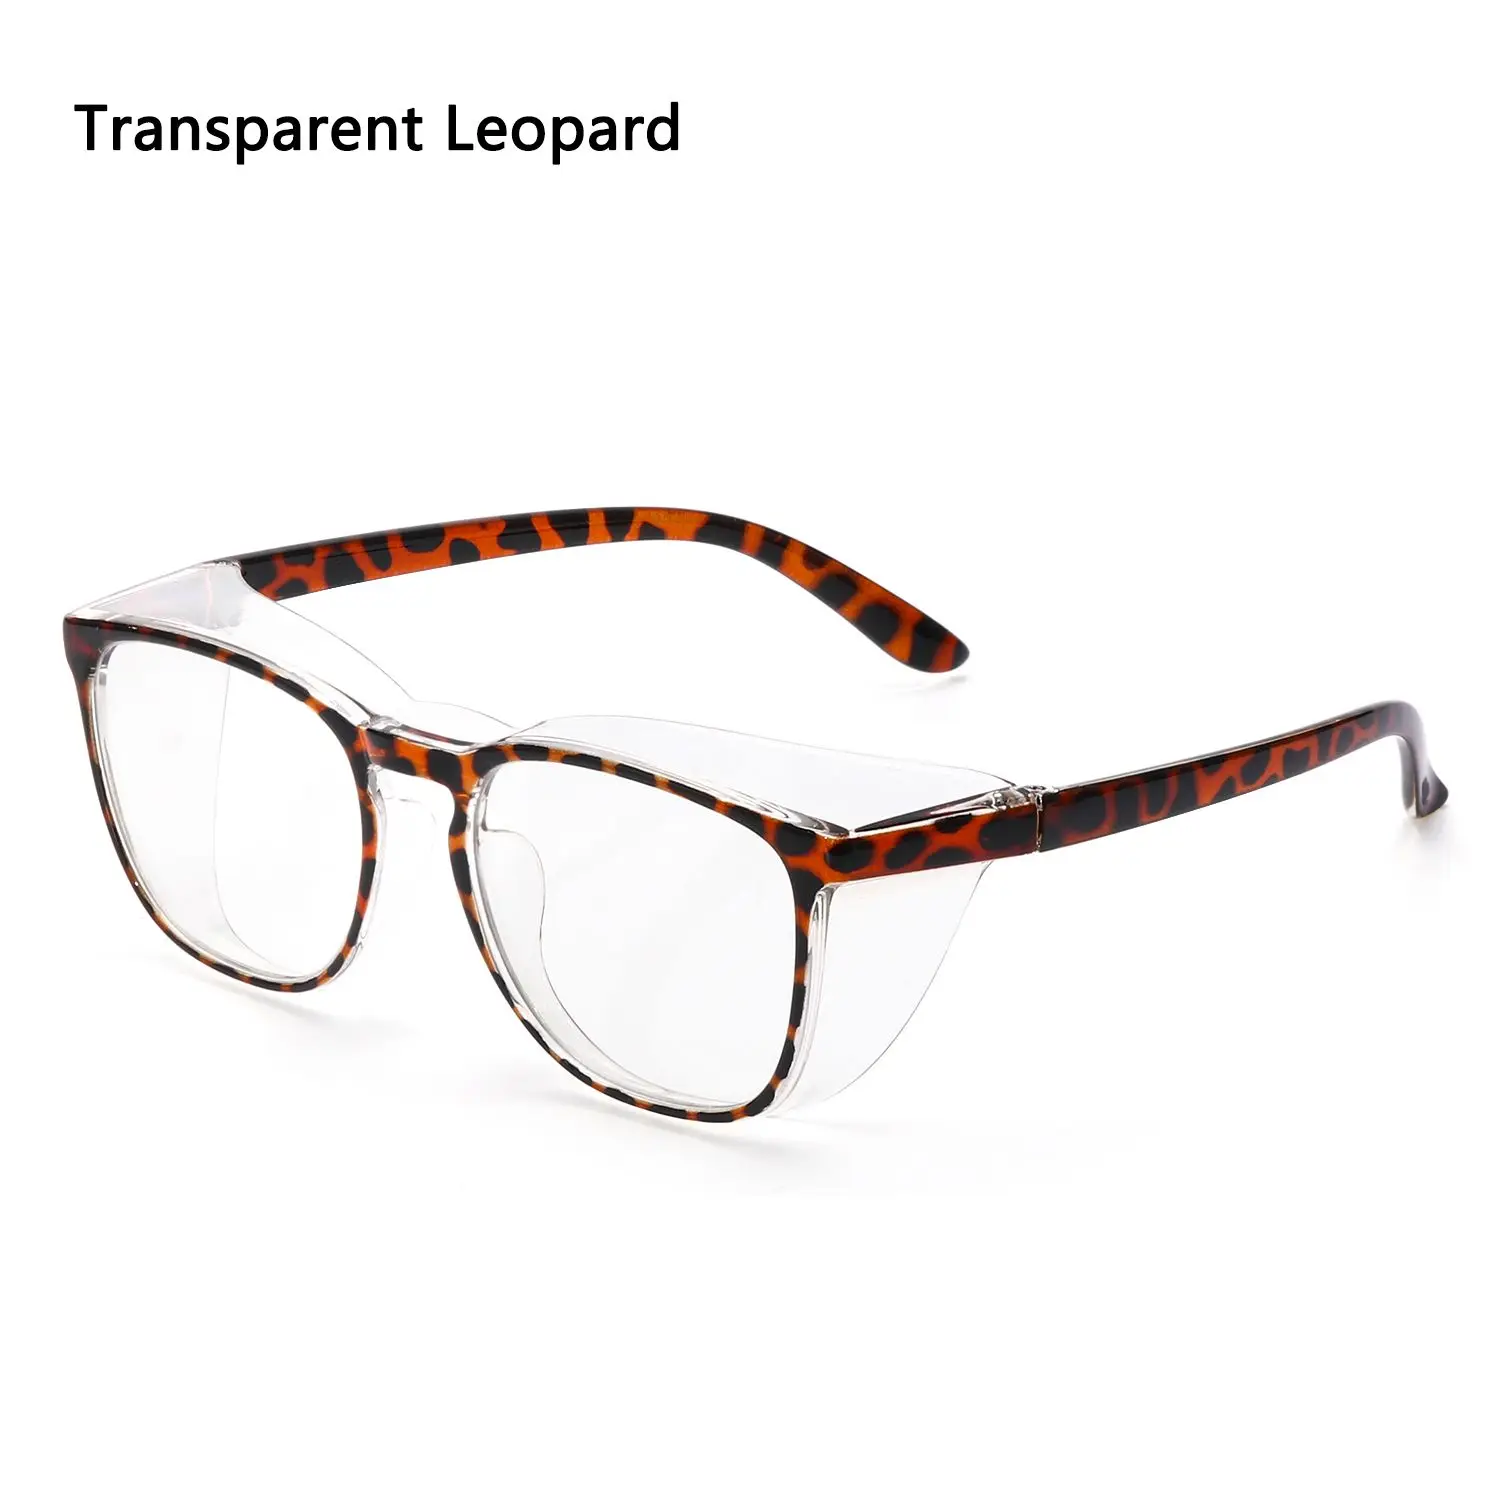 Transparent Leopard